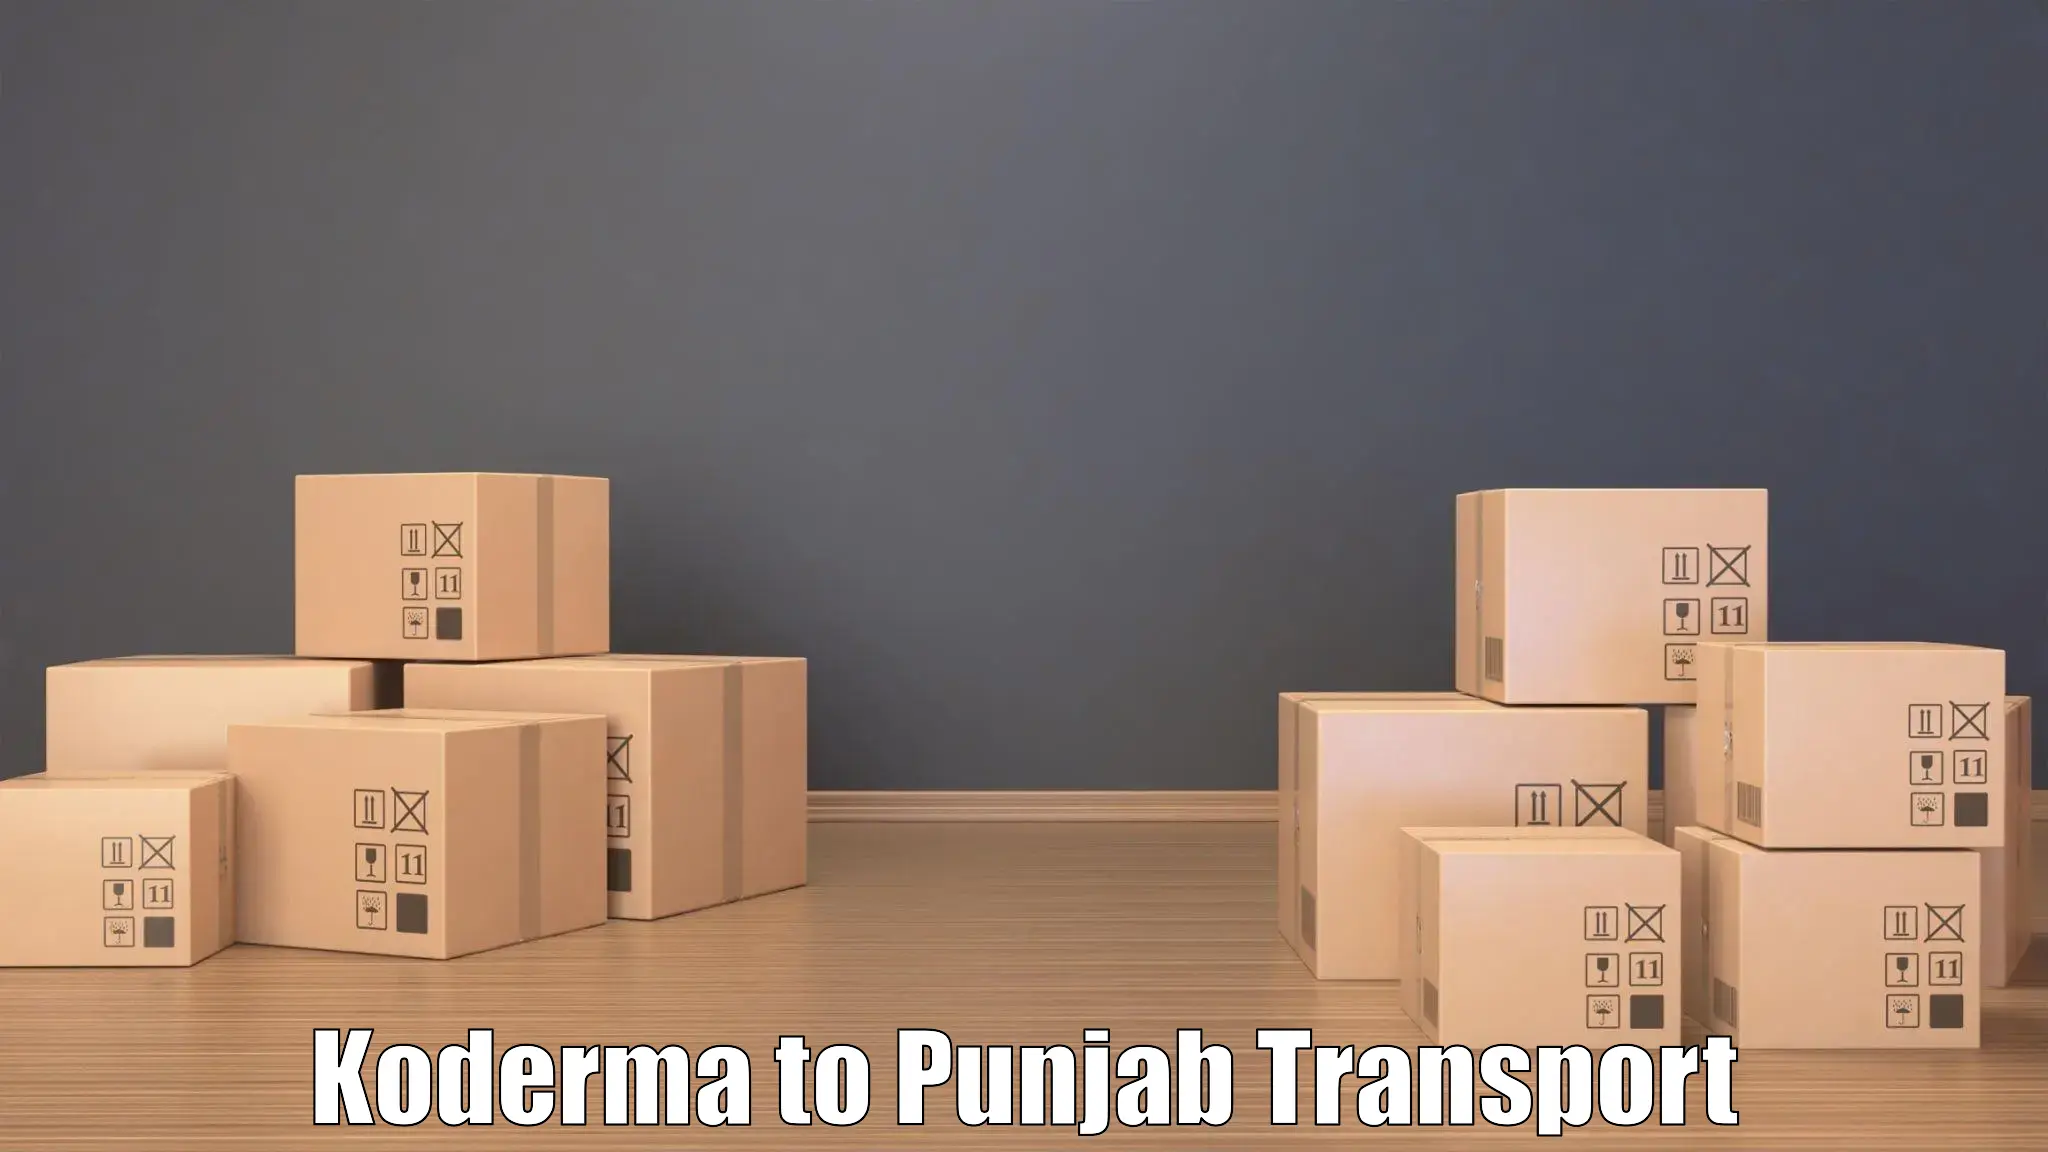 Transportation services Koderma to Rupnagar